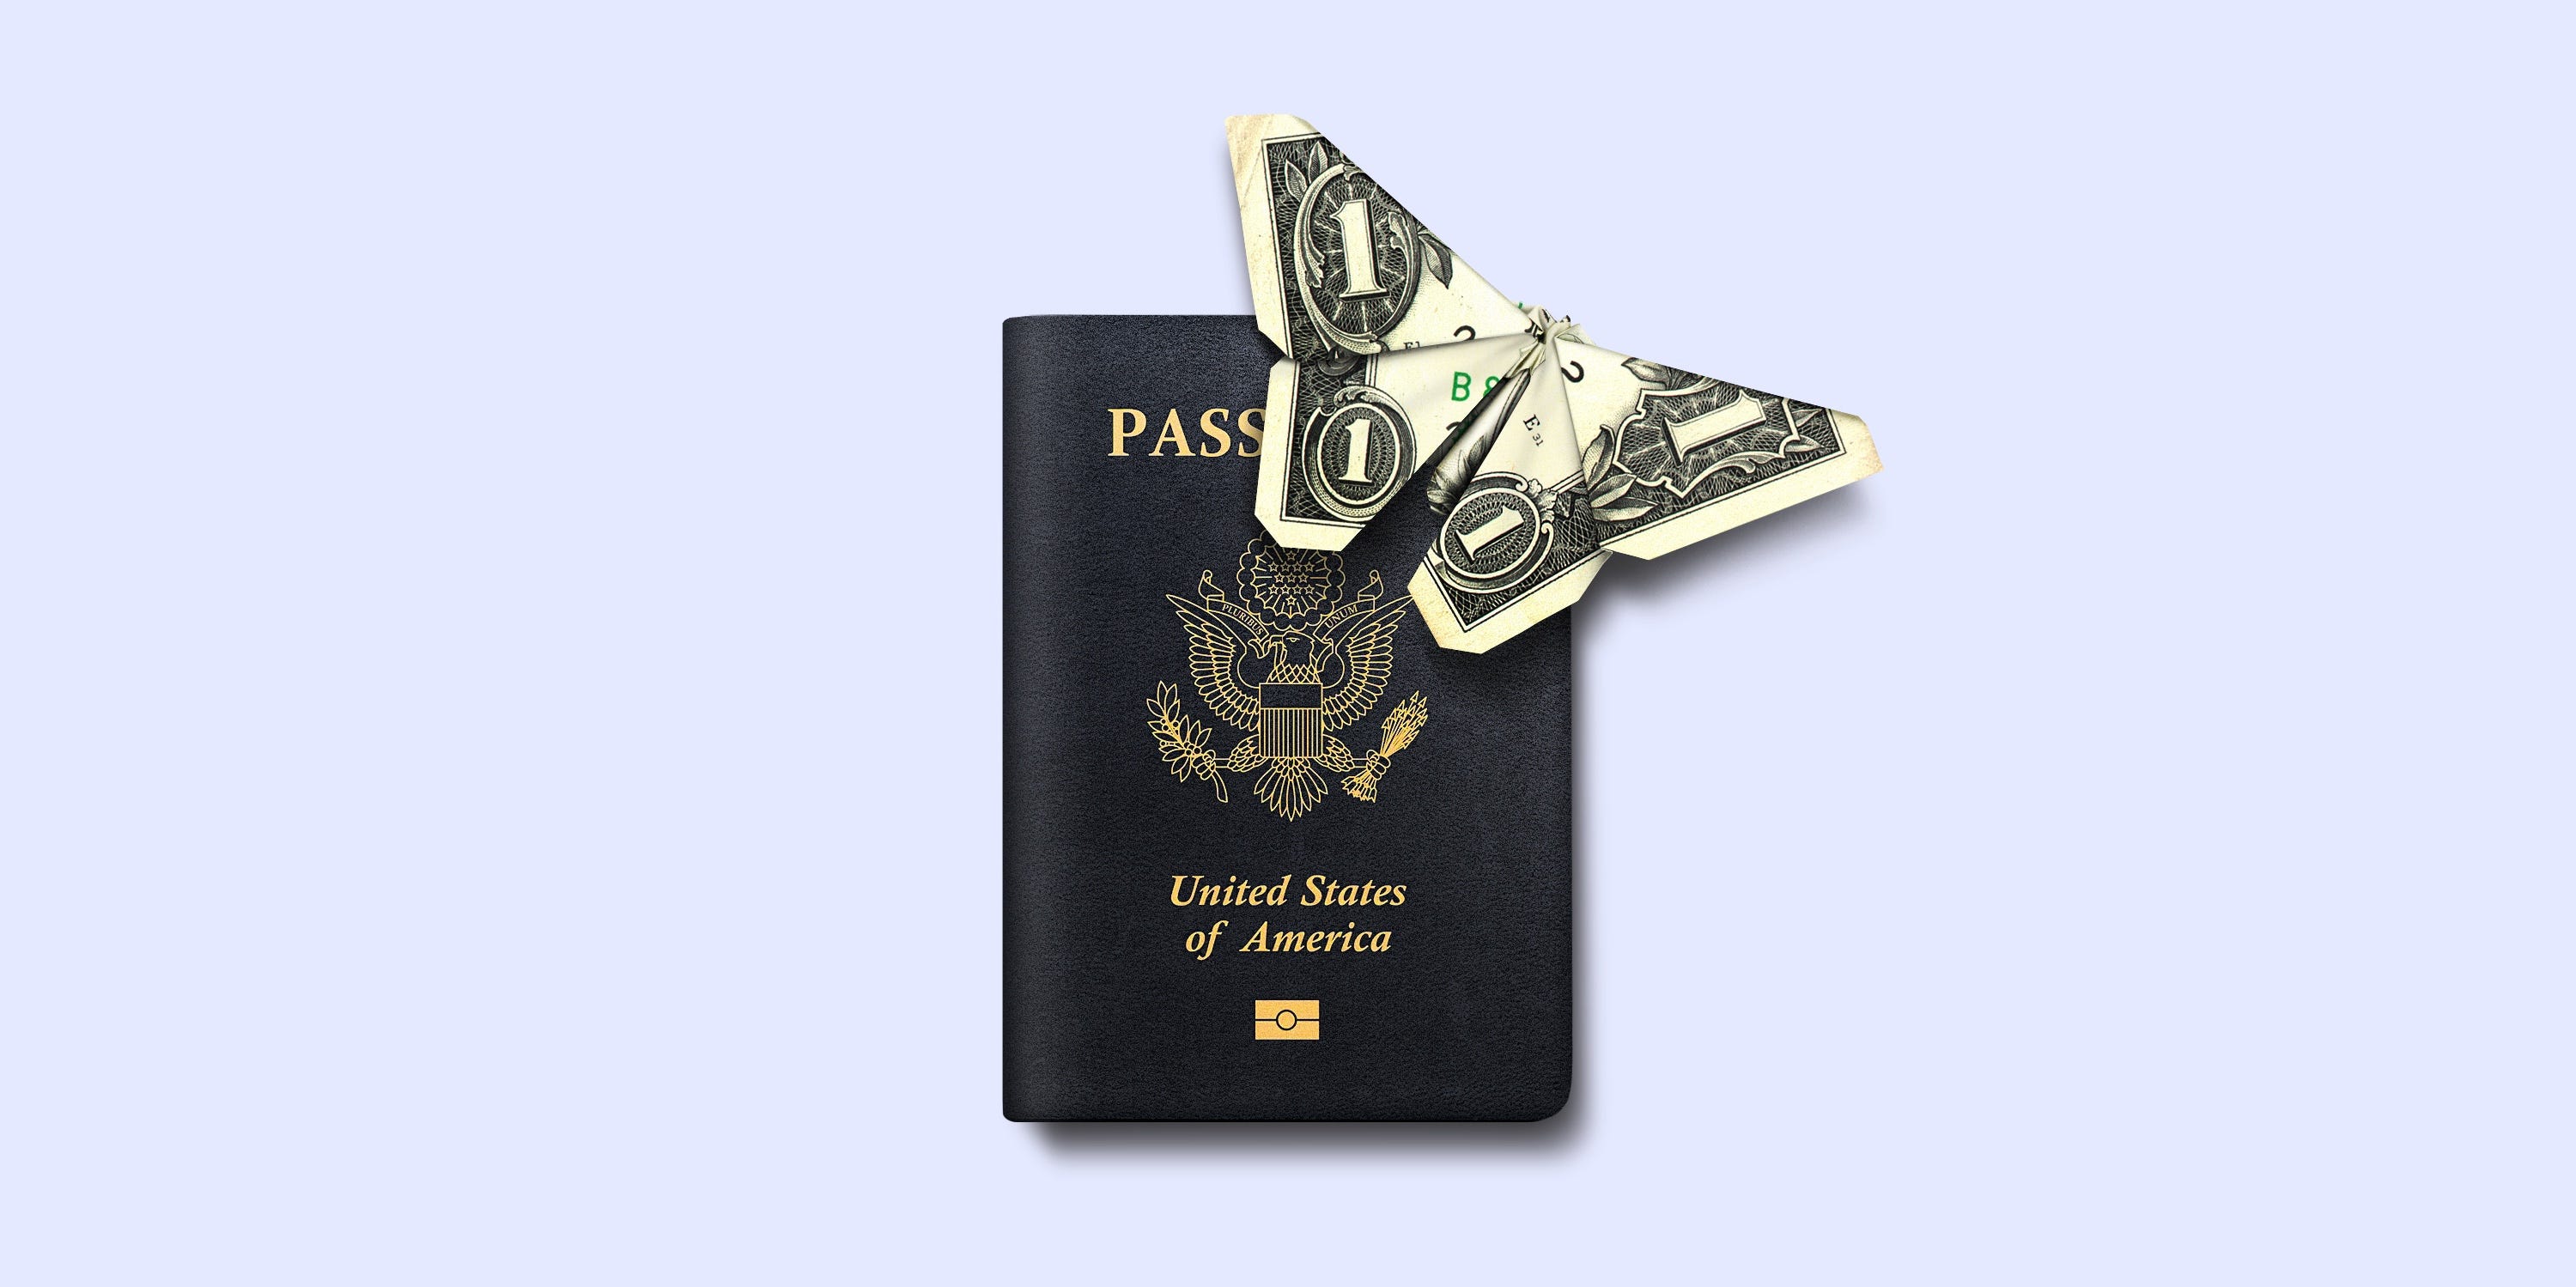 Fotoillustration eines Pass- und Geldschmetterlings.